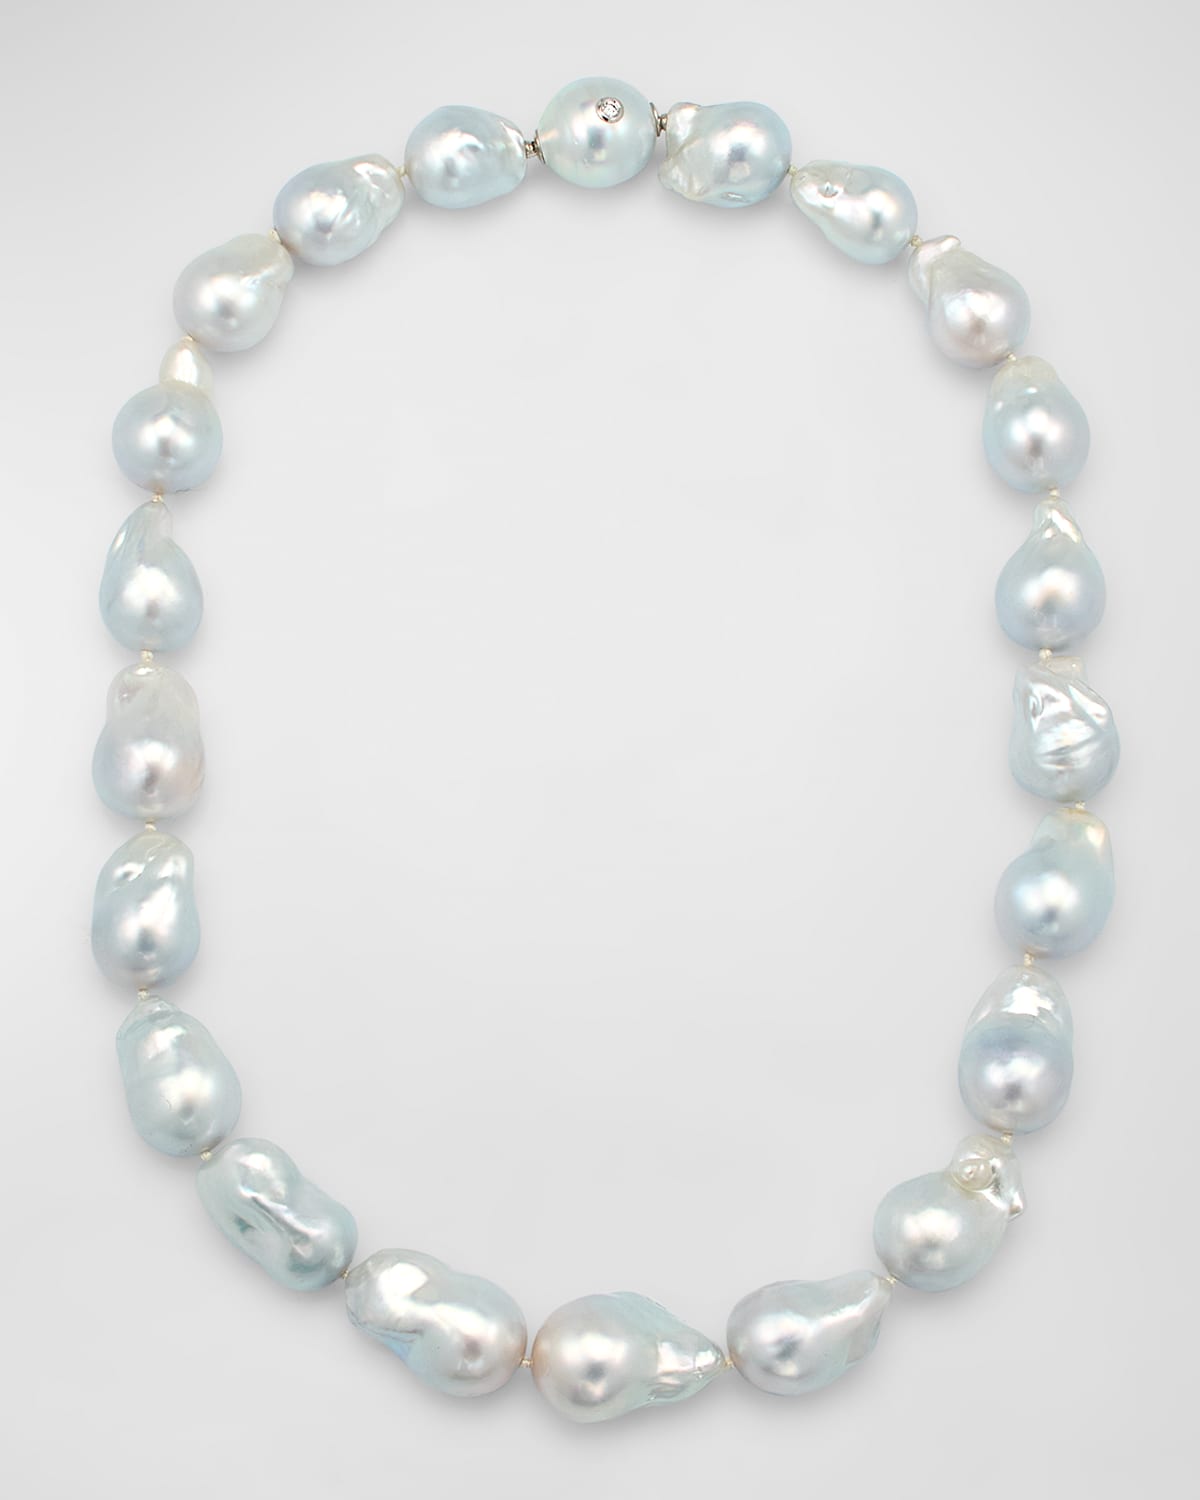 Baroque South Sea Pearl Necklace